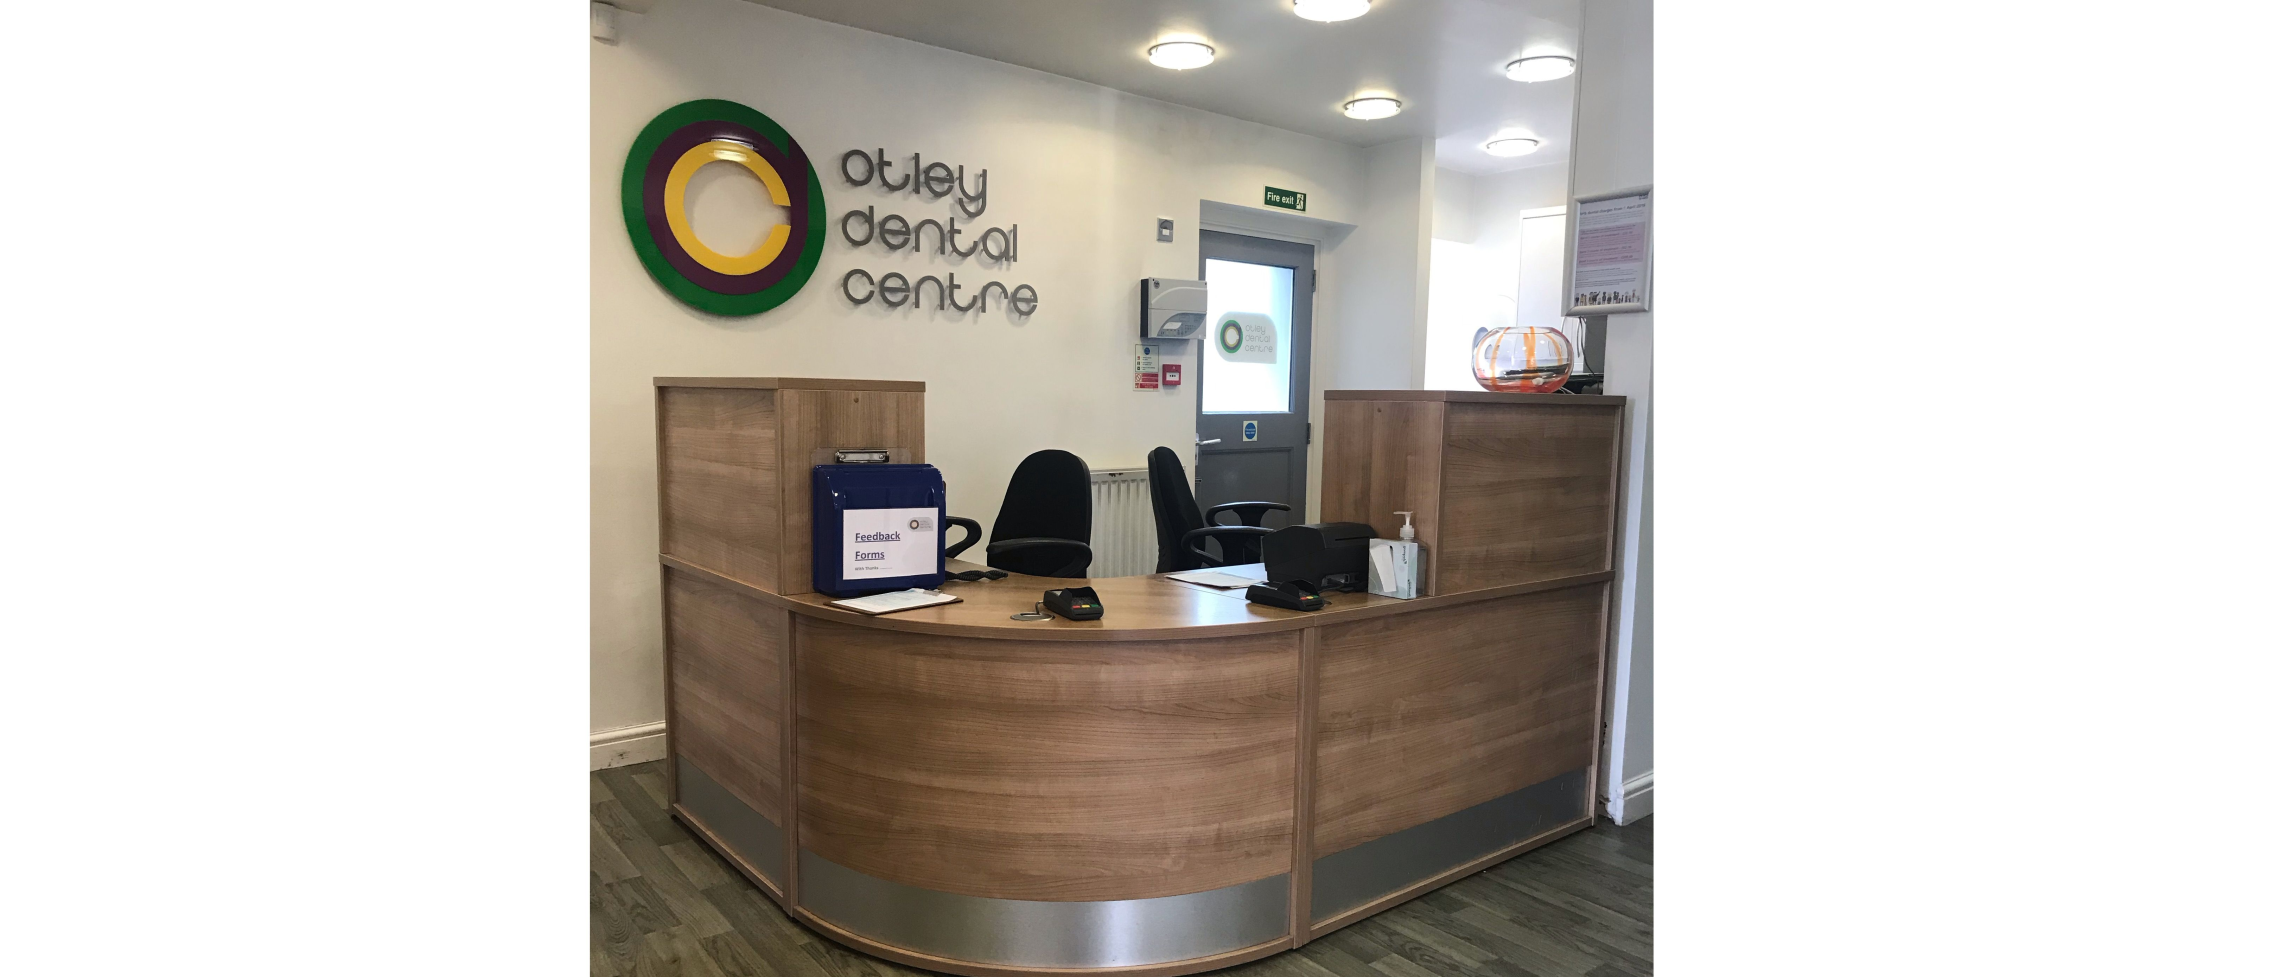 Otley Dental Centre